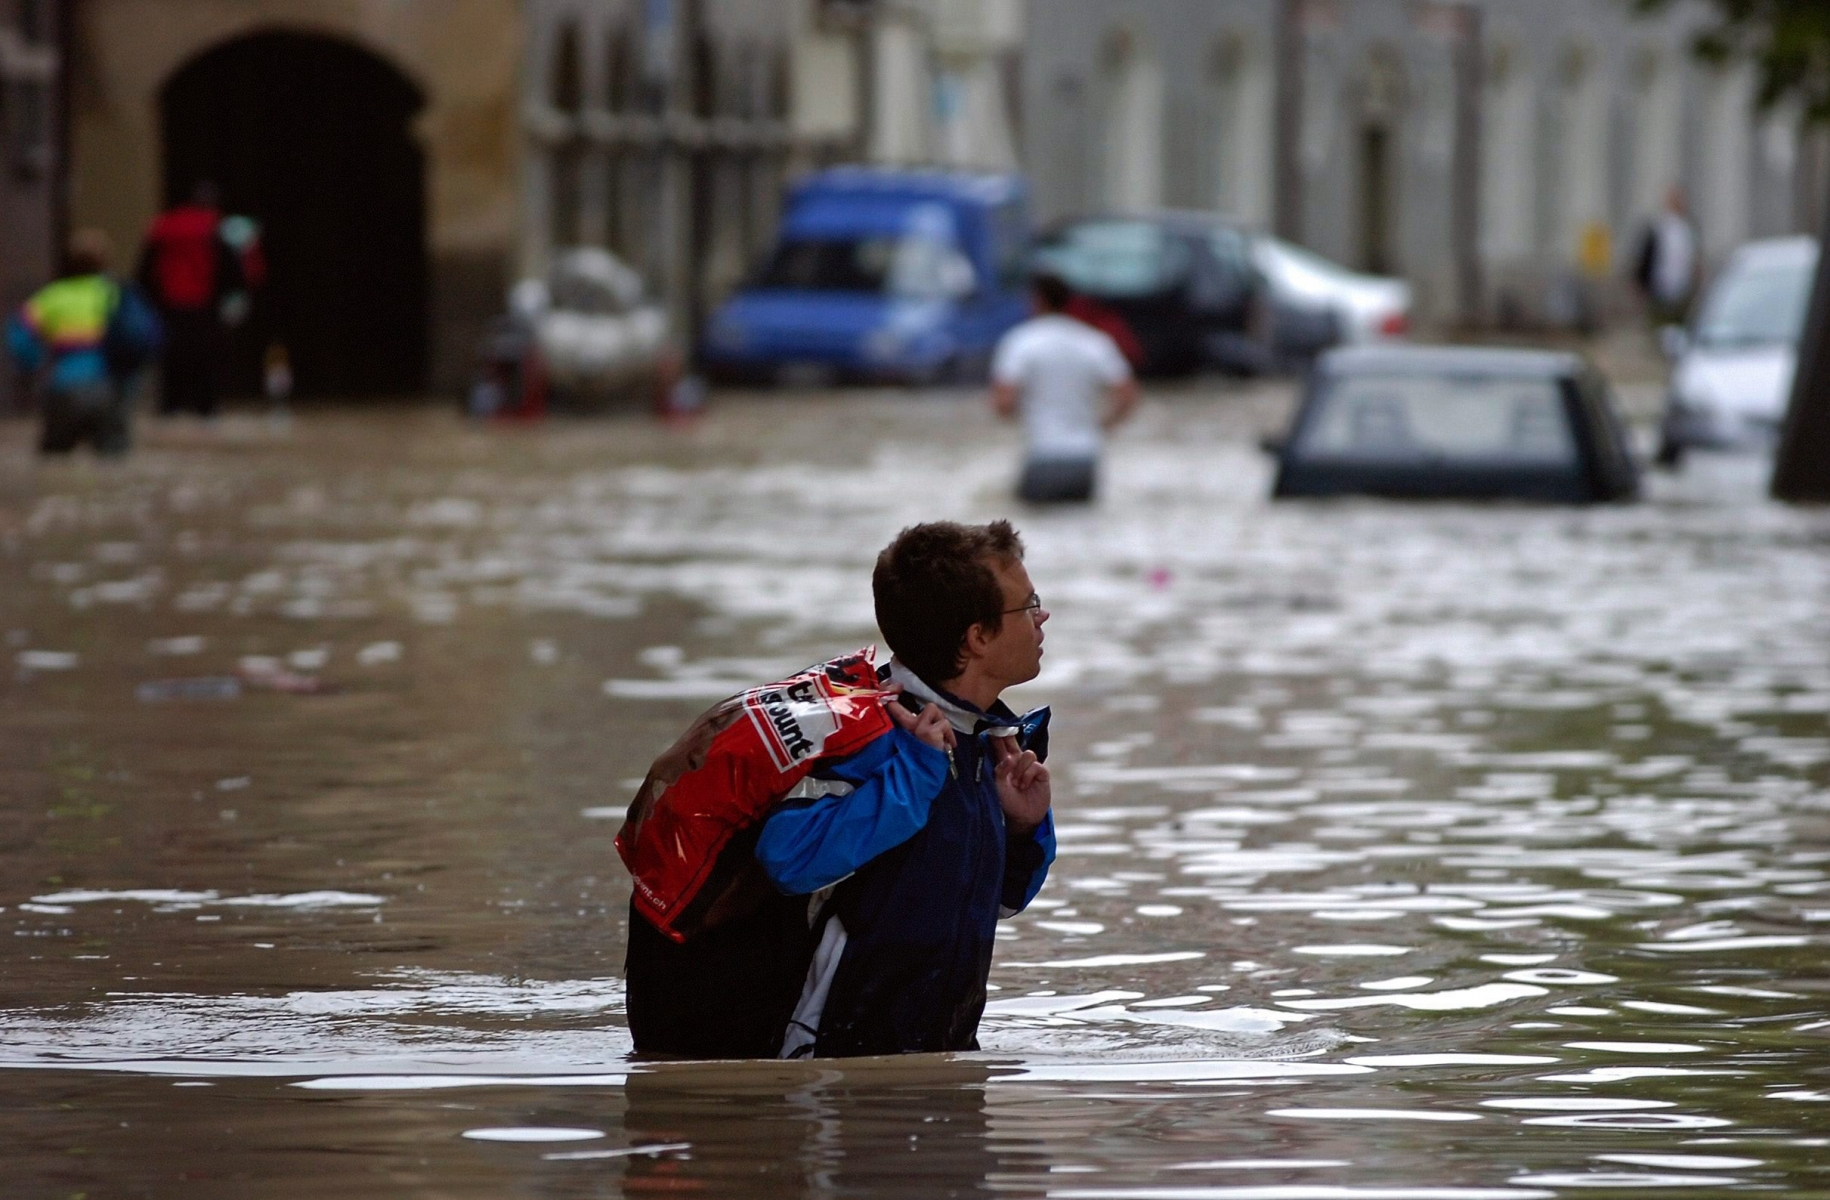 Inondations dans la vieille ville de Berne

Ein junger Mann watet am 22. August 2005 durch eine ueberschwemmt Strasse im Berner Mattequartier.   (KEYSTONE/Lukas Lehmann)